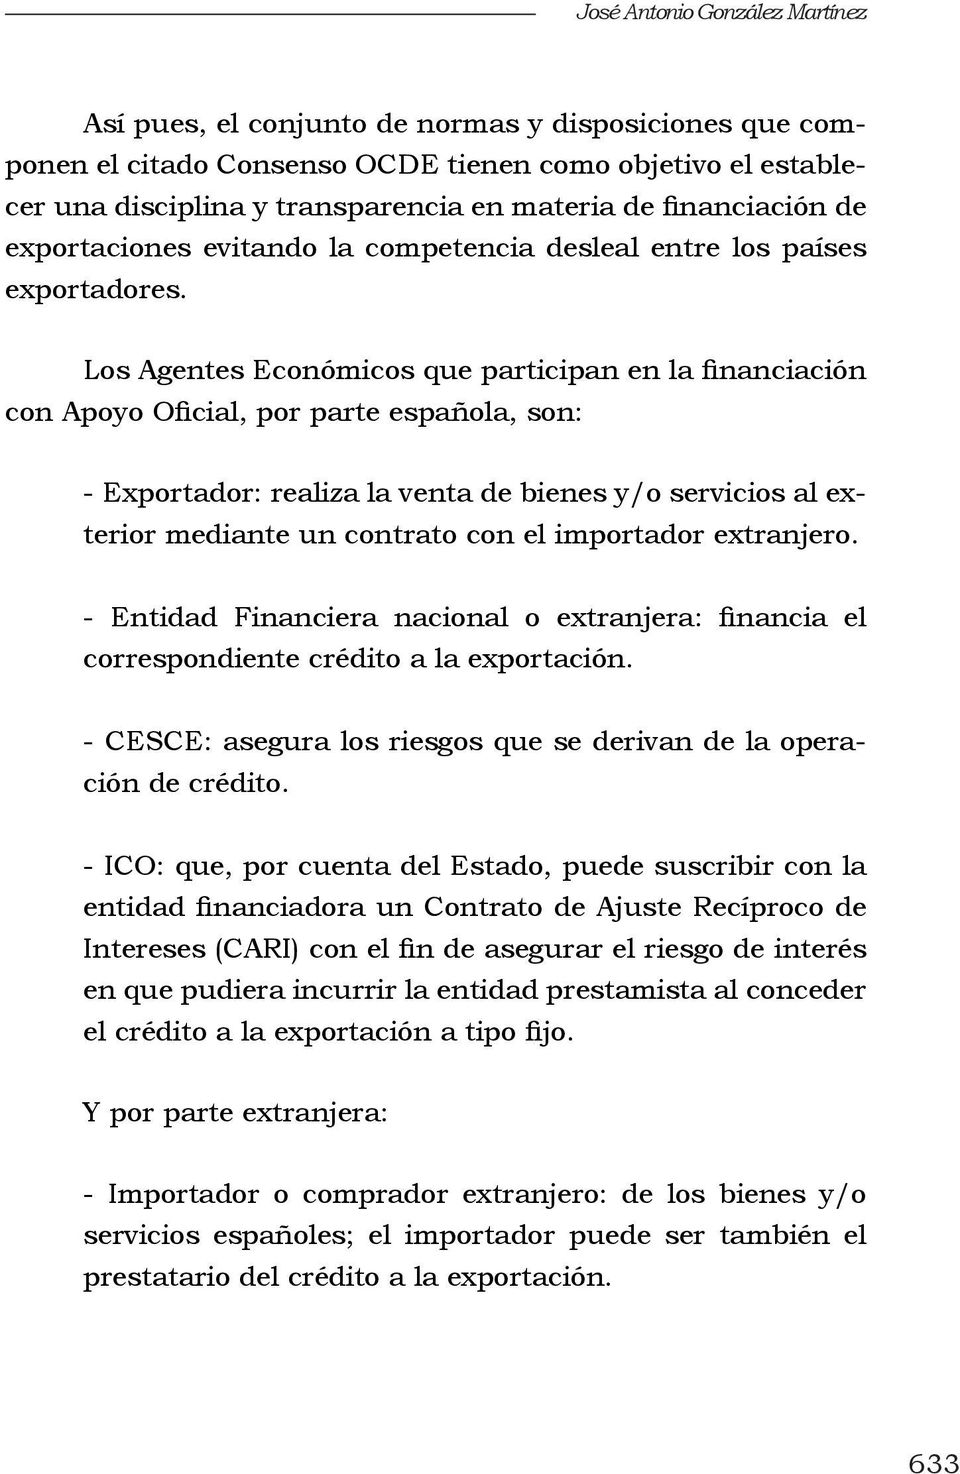 Los Agentes Económicos que participan en la financiación con Apoyo Oficial, por parte española, son: - Exportador: realiza la venta de bienes y/o servicios al exterior mediante un contrato con el